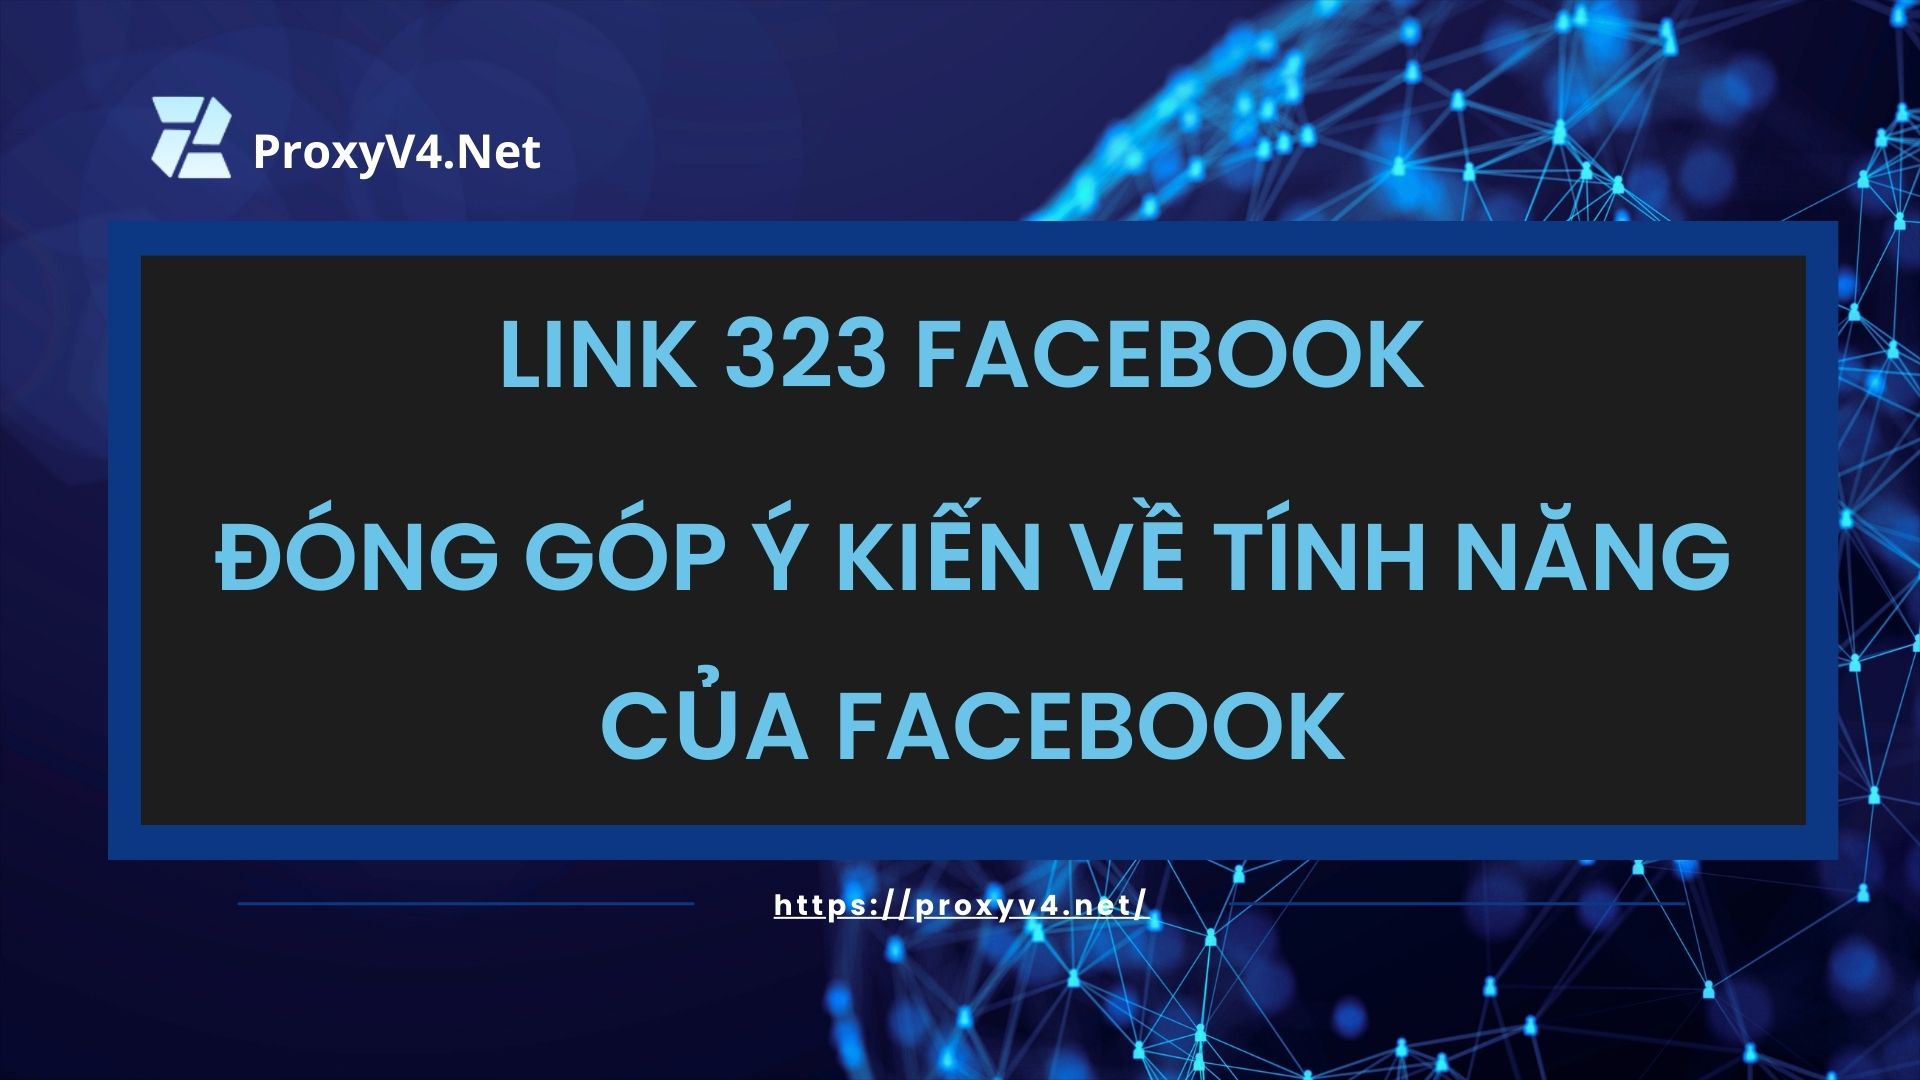 Link 323 Facebook - Đóng góp ý kiến về tính năng của Facebook